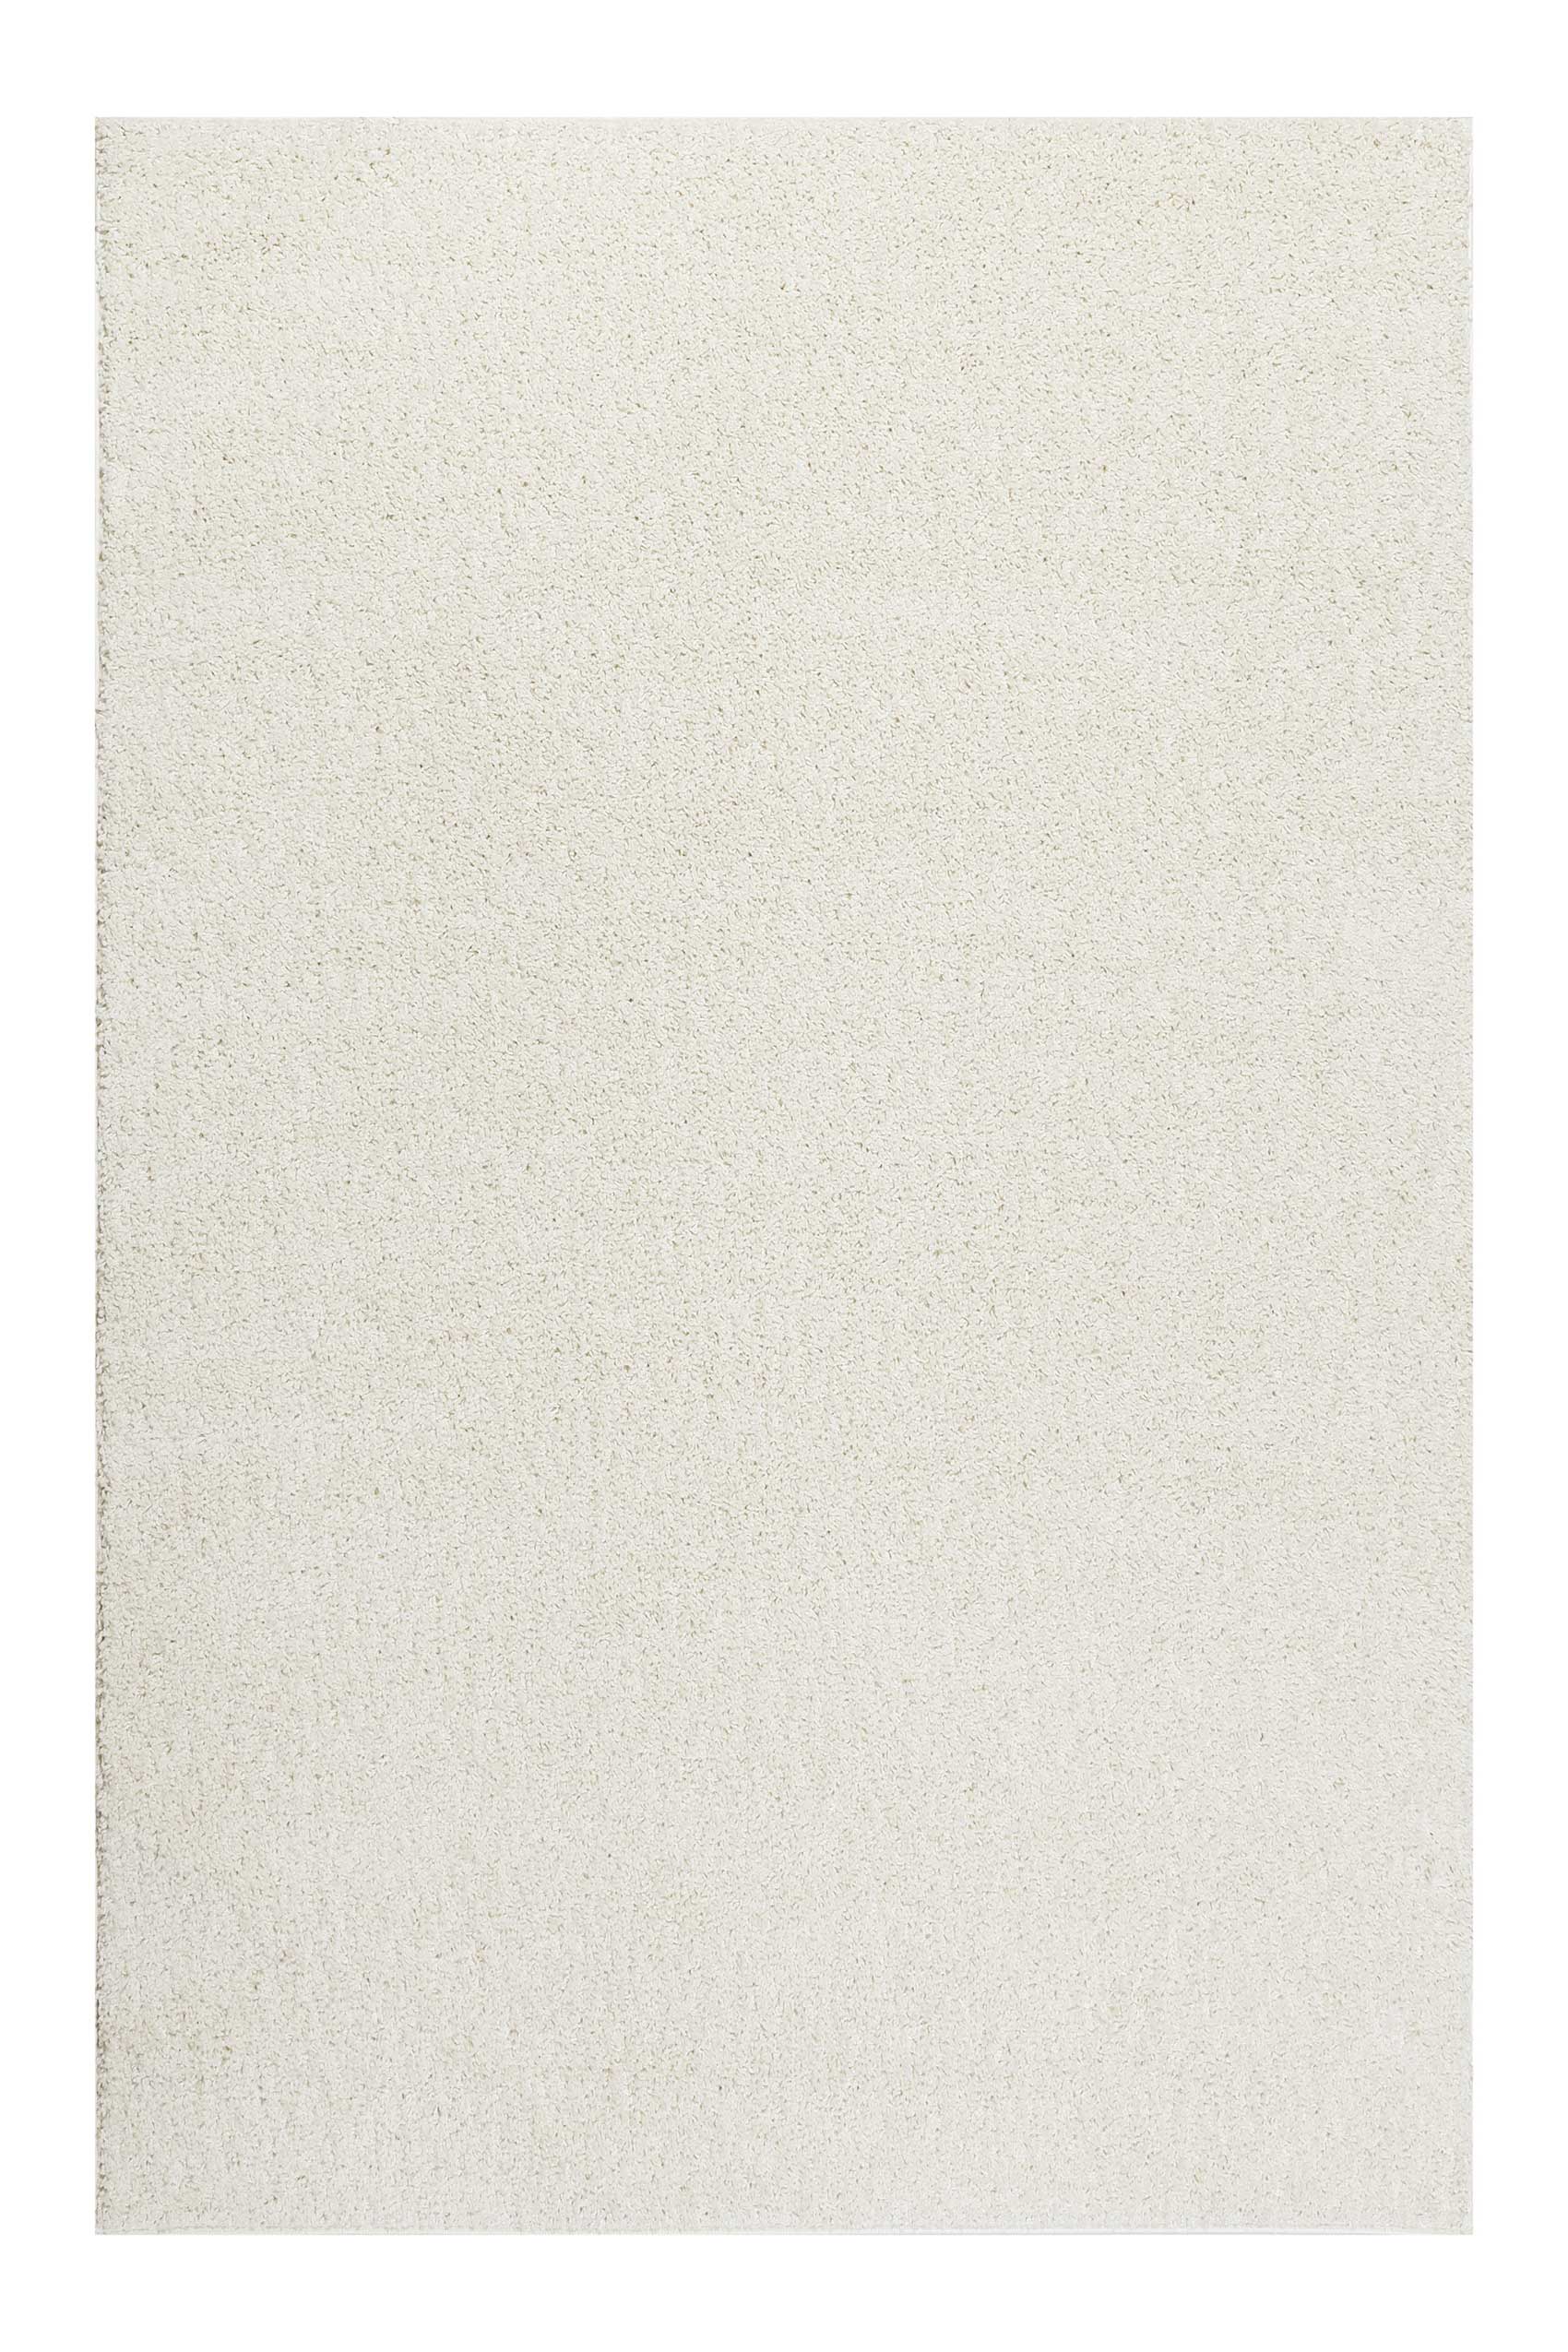 Esprit Teppich Creme « Hochflor » Weiß Outlet-Teppiche – Shag #Whisper